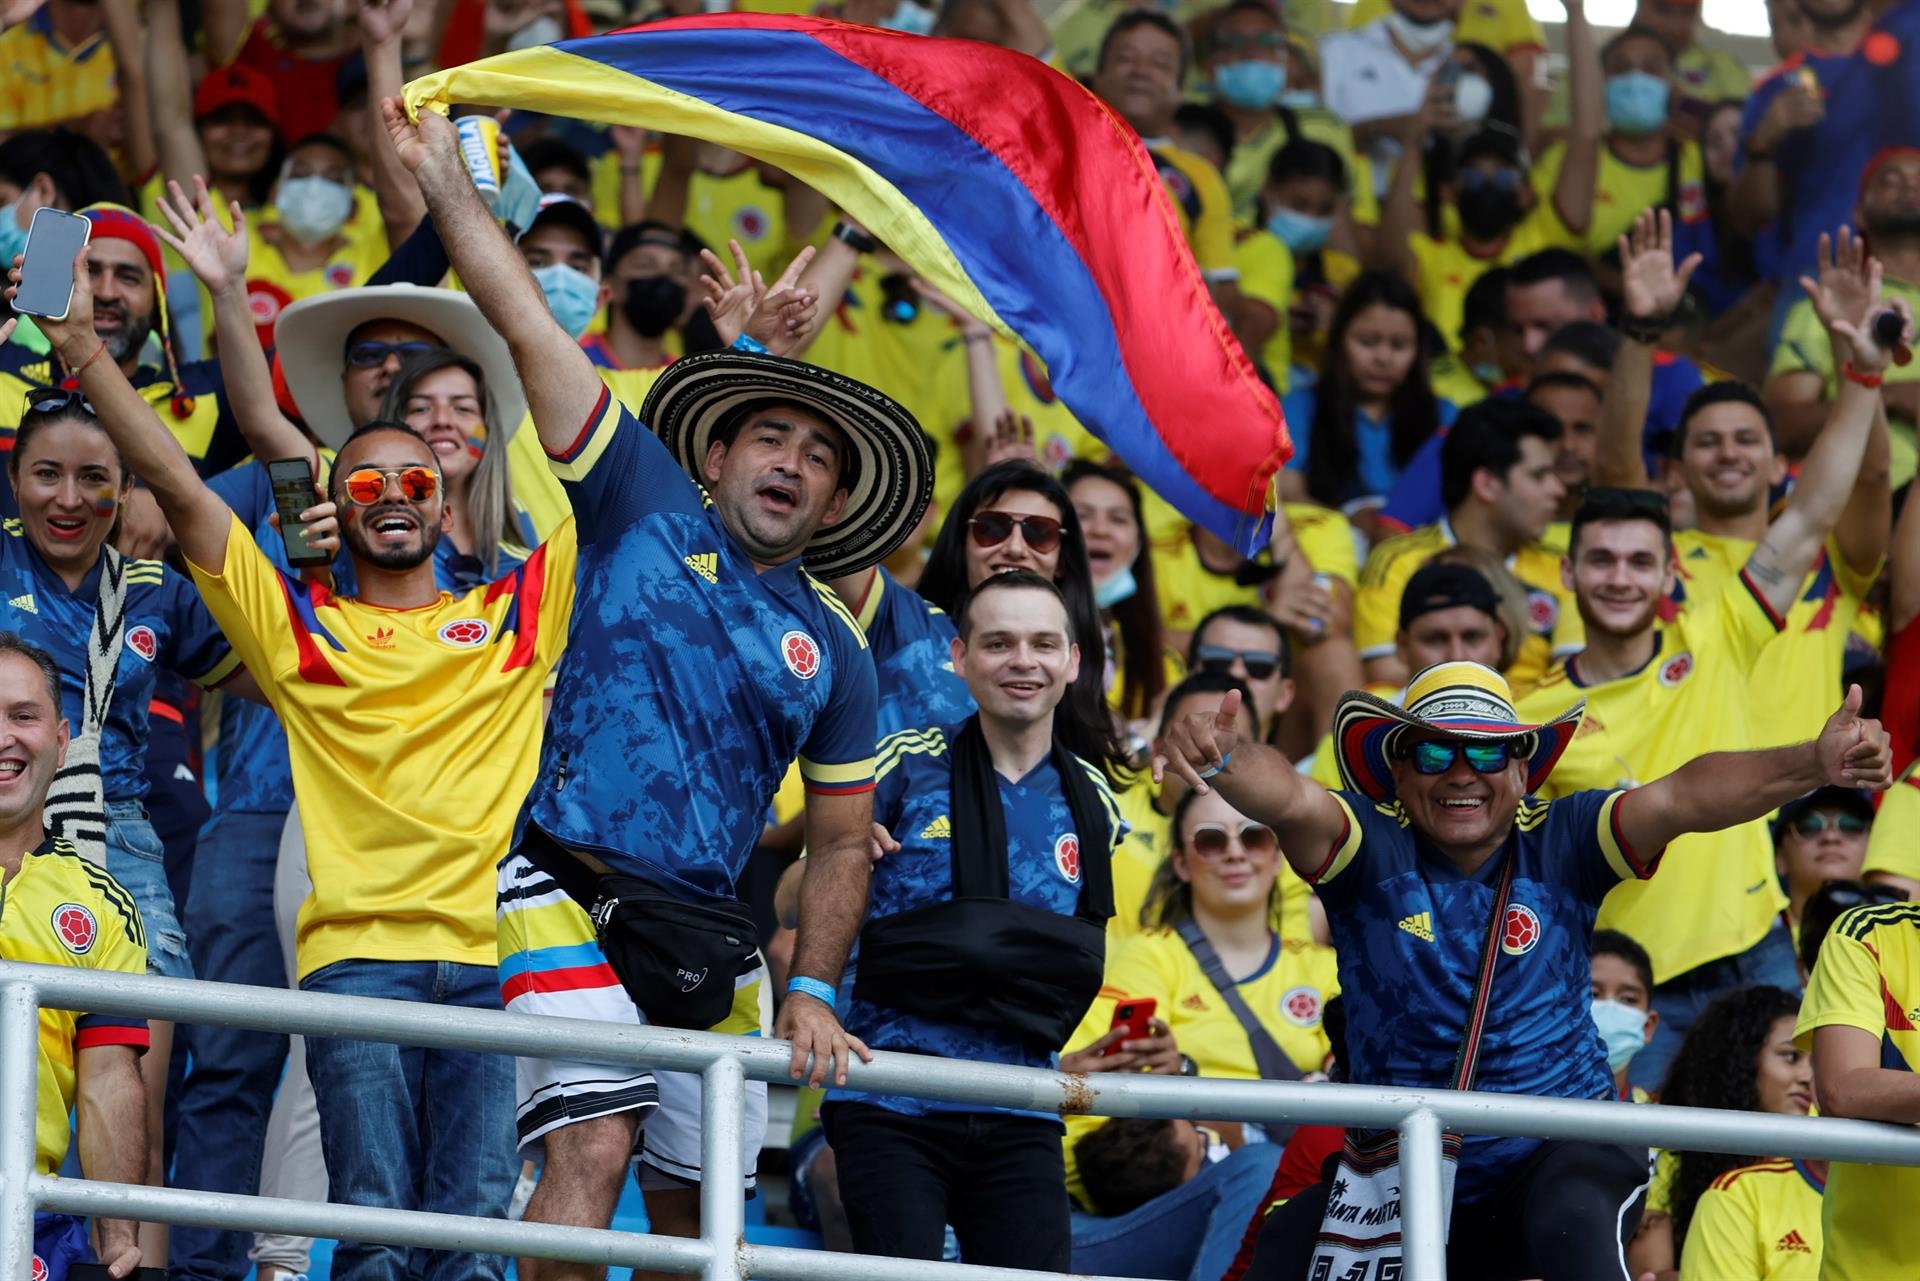 Colombia y Ecuador empataron - noticiacn